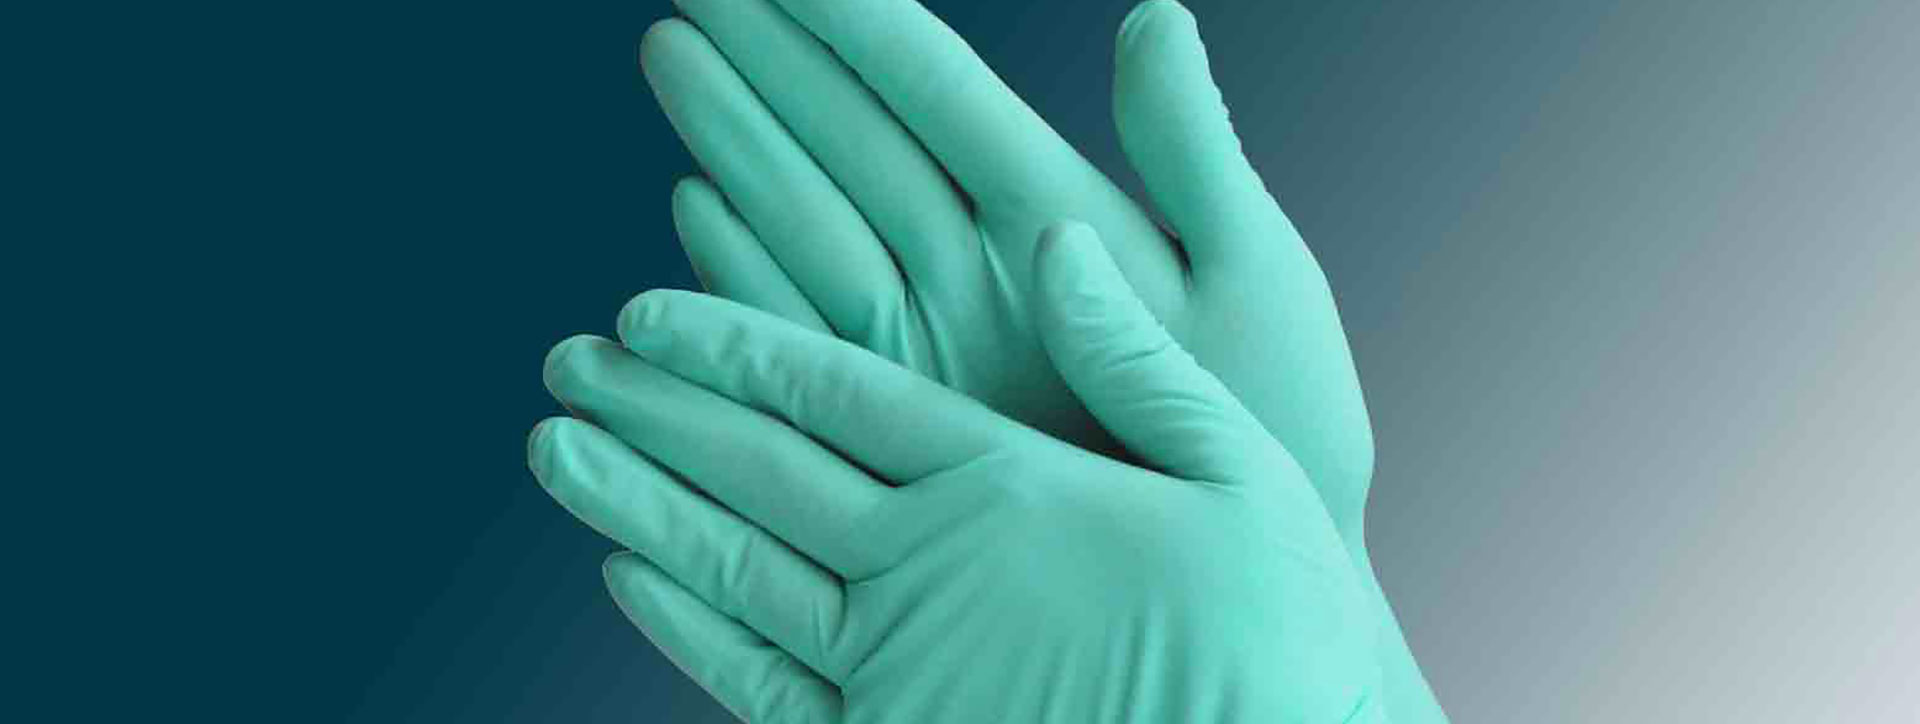 Especificación estándar ASTM D6319-19 para guantes de examen de nitrilo para aplicaciones médicas